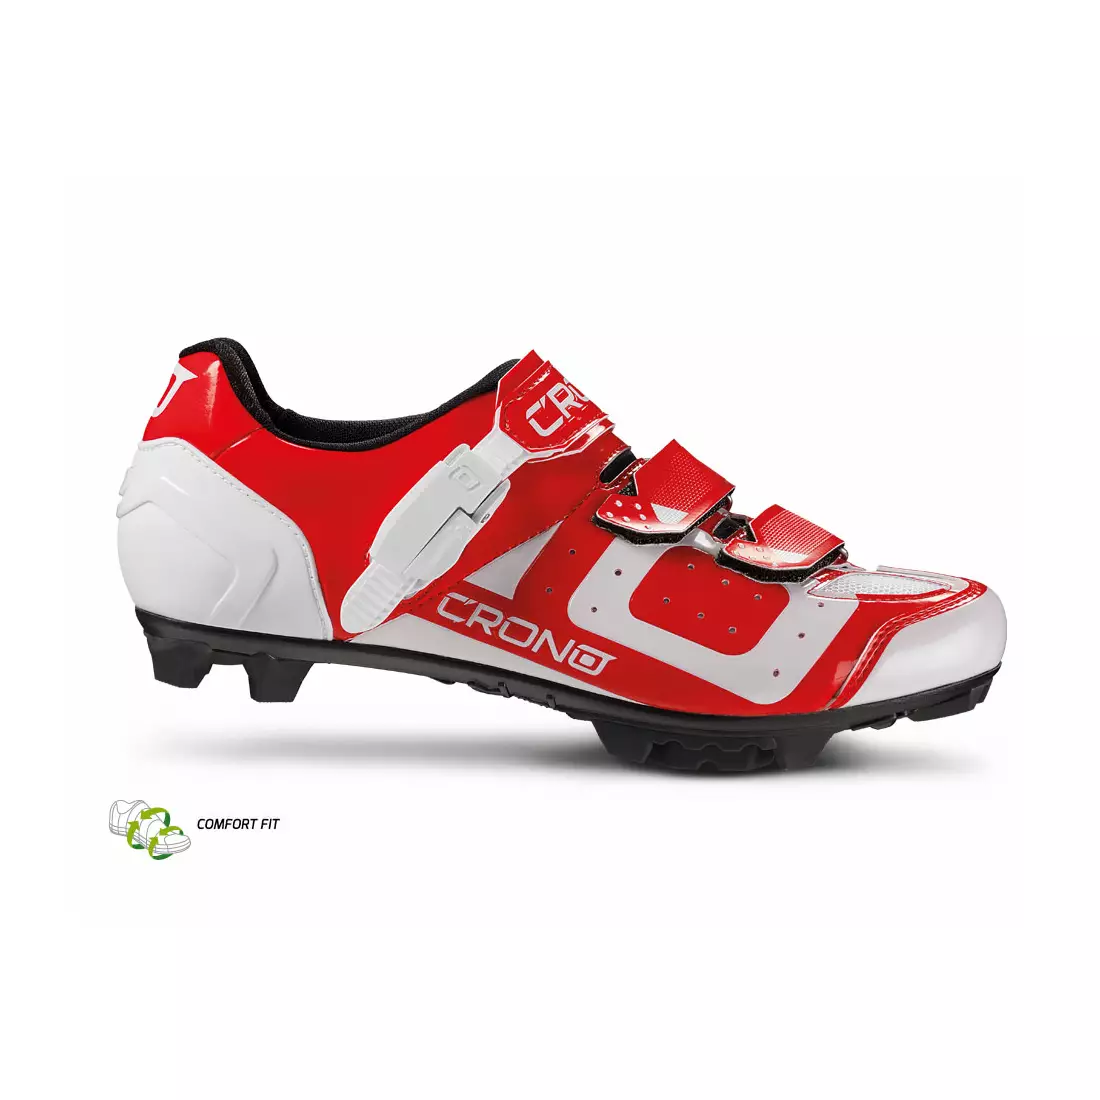 CRONO CX3 nylon - MTB cycling shoes, red